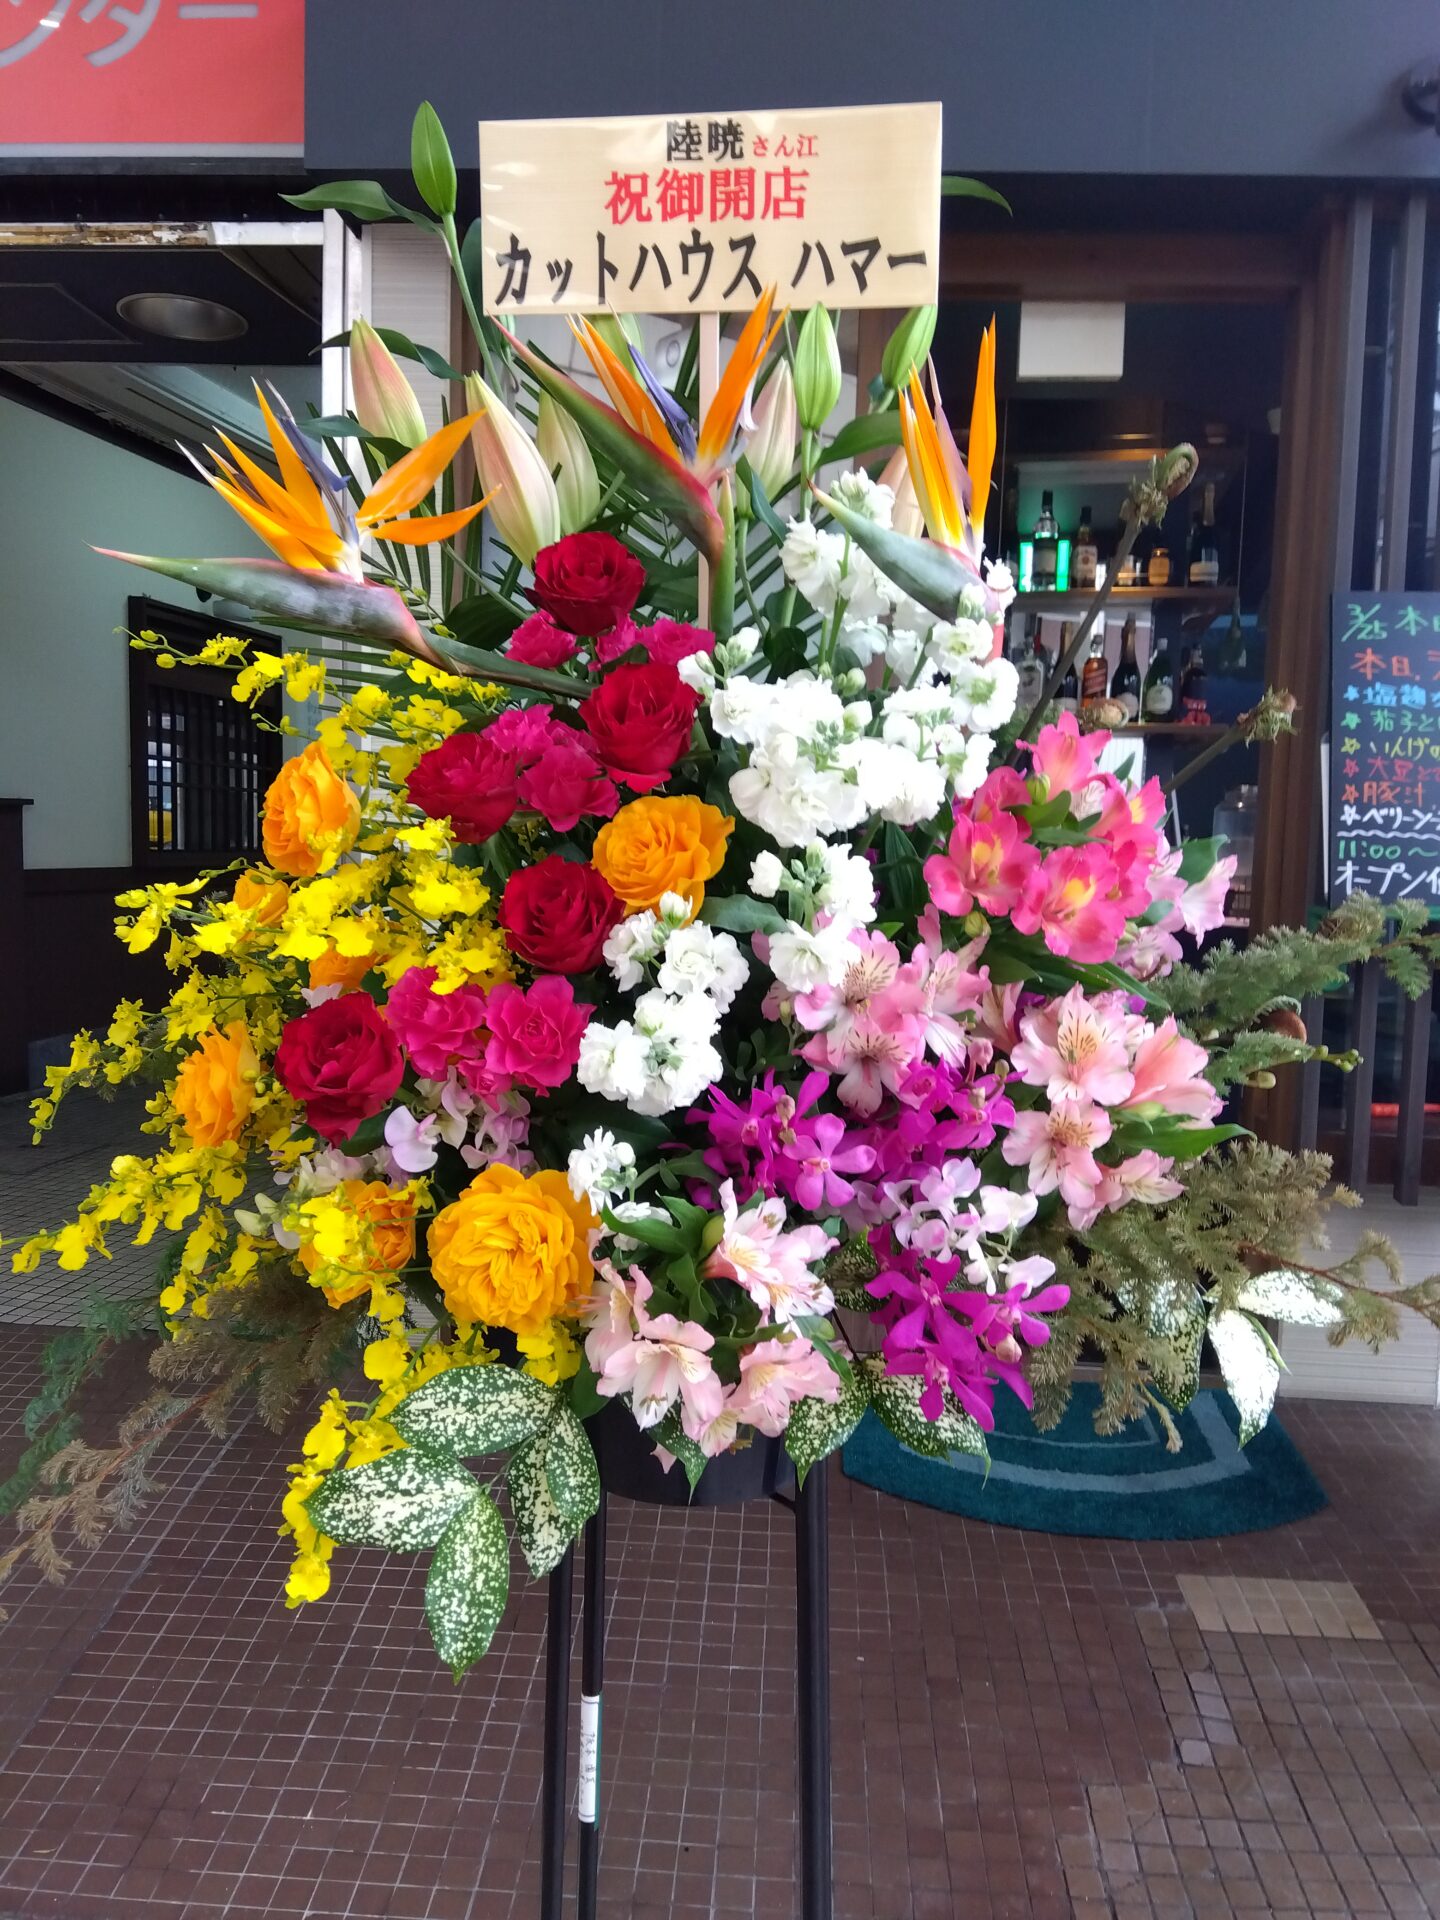 豊中市 桜塚の飲食店の開店お祝いのスタンド花